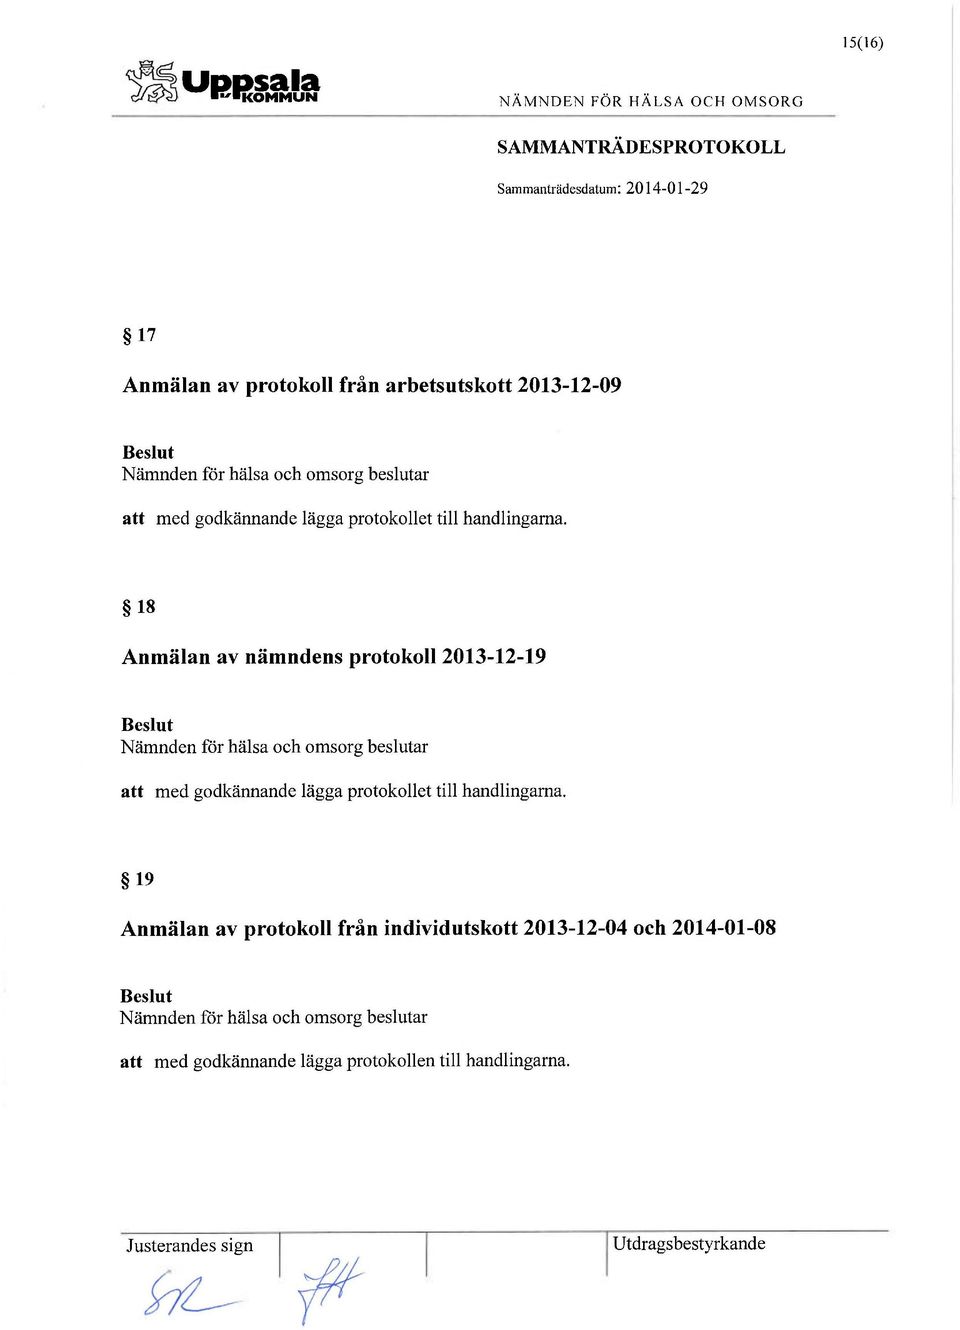 18 Anmälan av nämndens protokoll 2013-12-19 att med  19 Anmälan av protokoll från